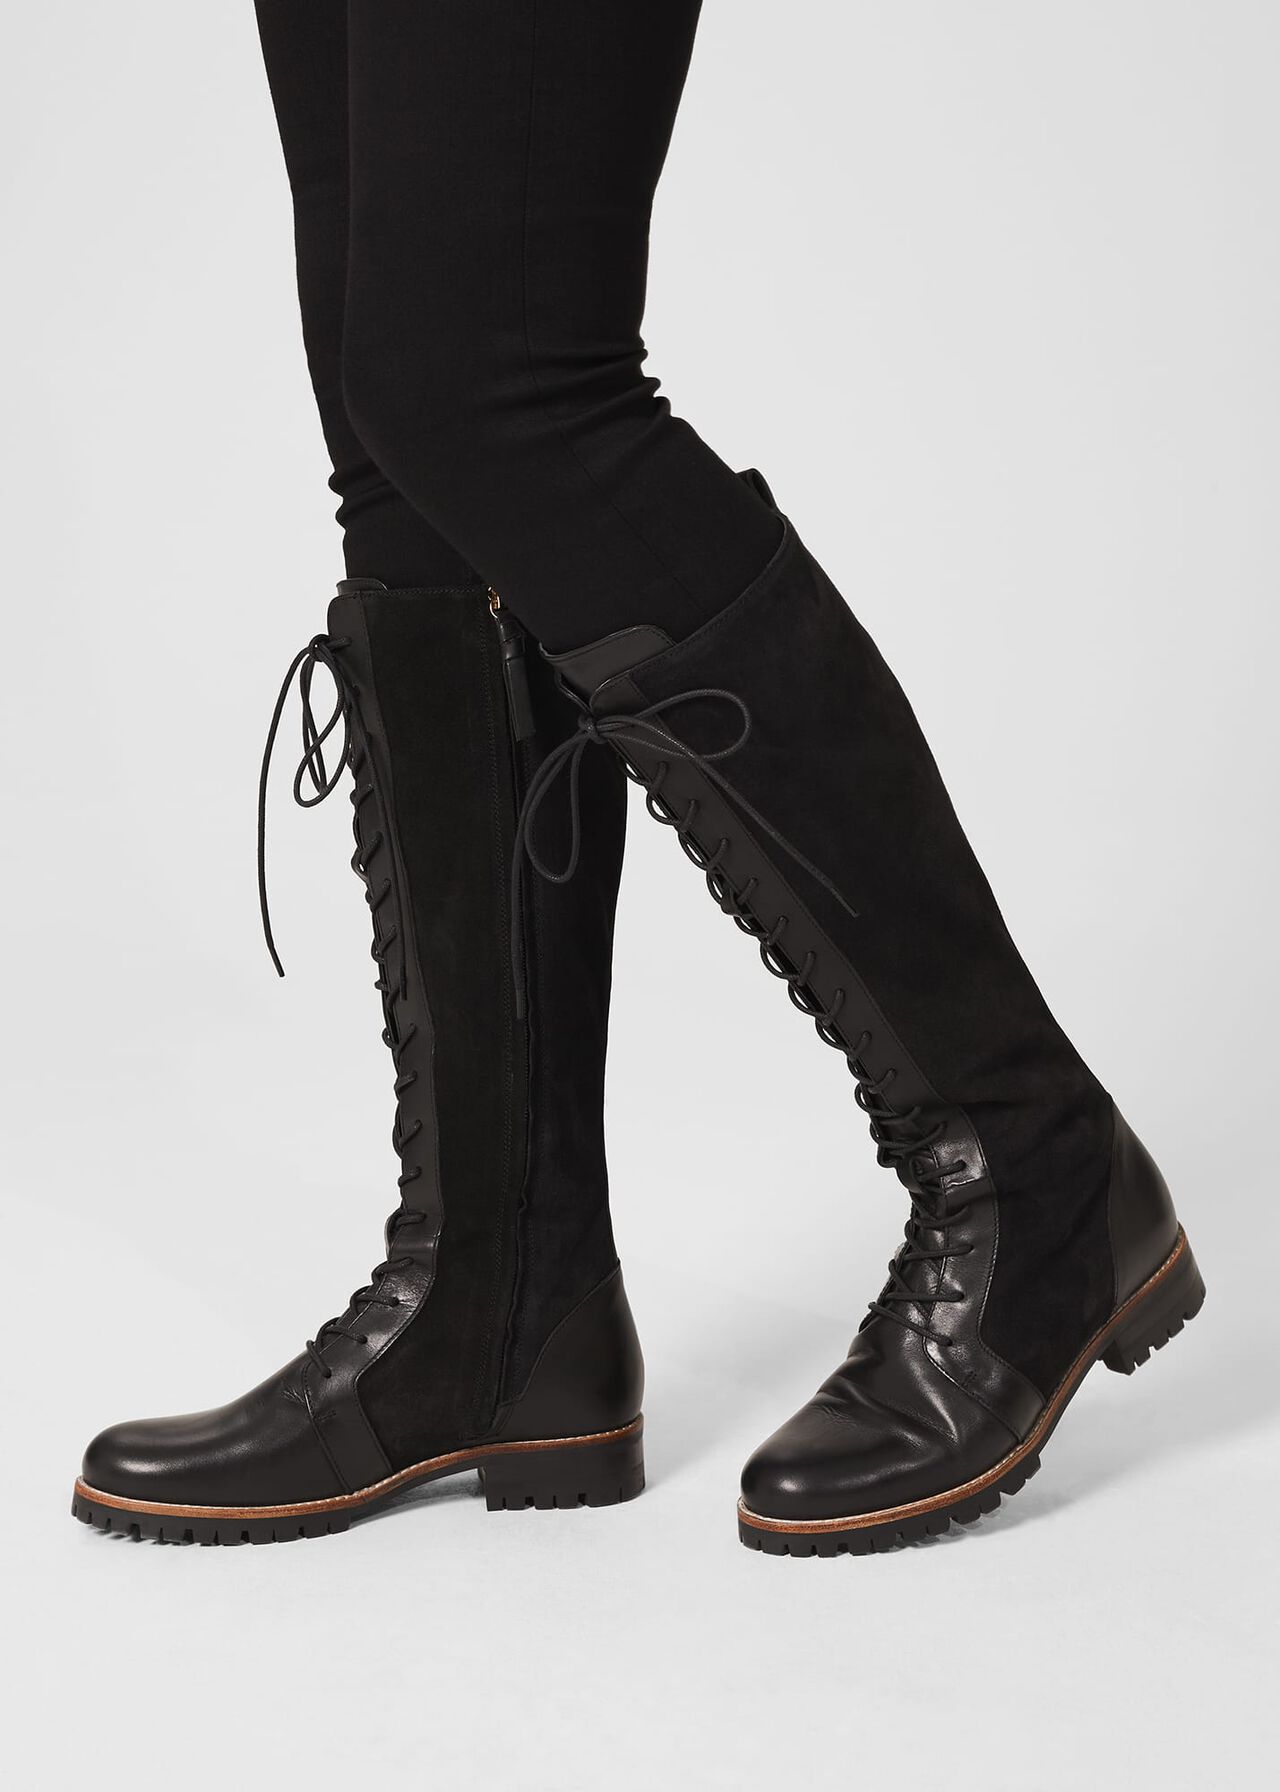 Devina Knee Boots, Black, hi-res